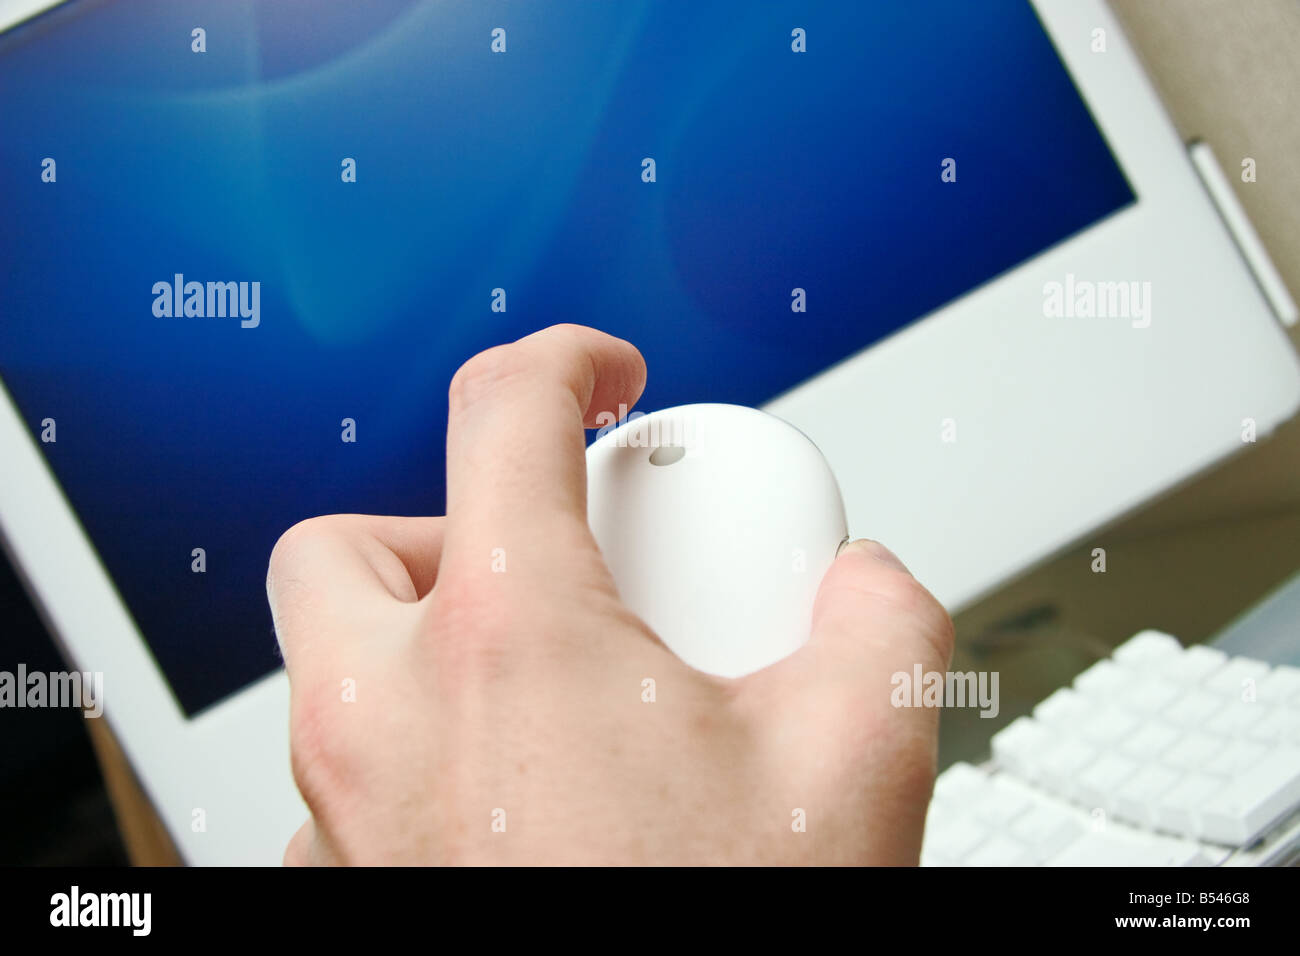 Mans Hand mit Apple Maus über Luft-Bildschirm des iMac-Computer auf eine Kulissen ausgewählte Fokus auf eine Kugel und finger Stockfoto